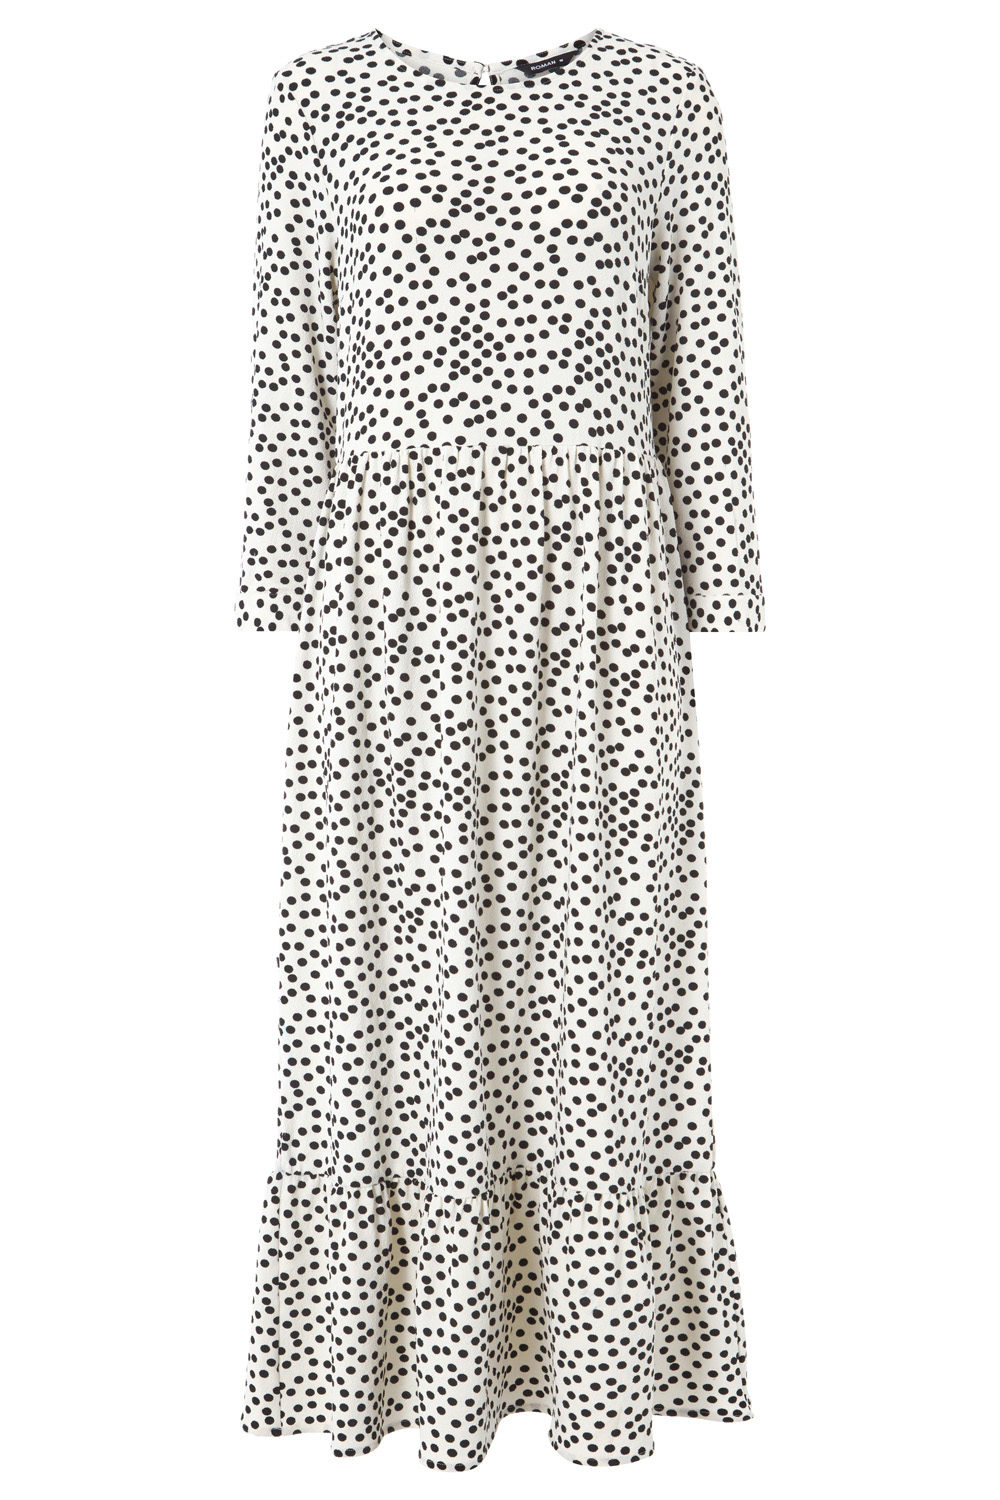 Polka Dot Print Tiered Maxi Dress in Ivory - Roman Originals UK